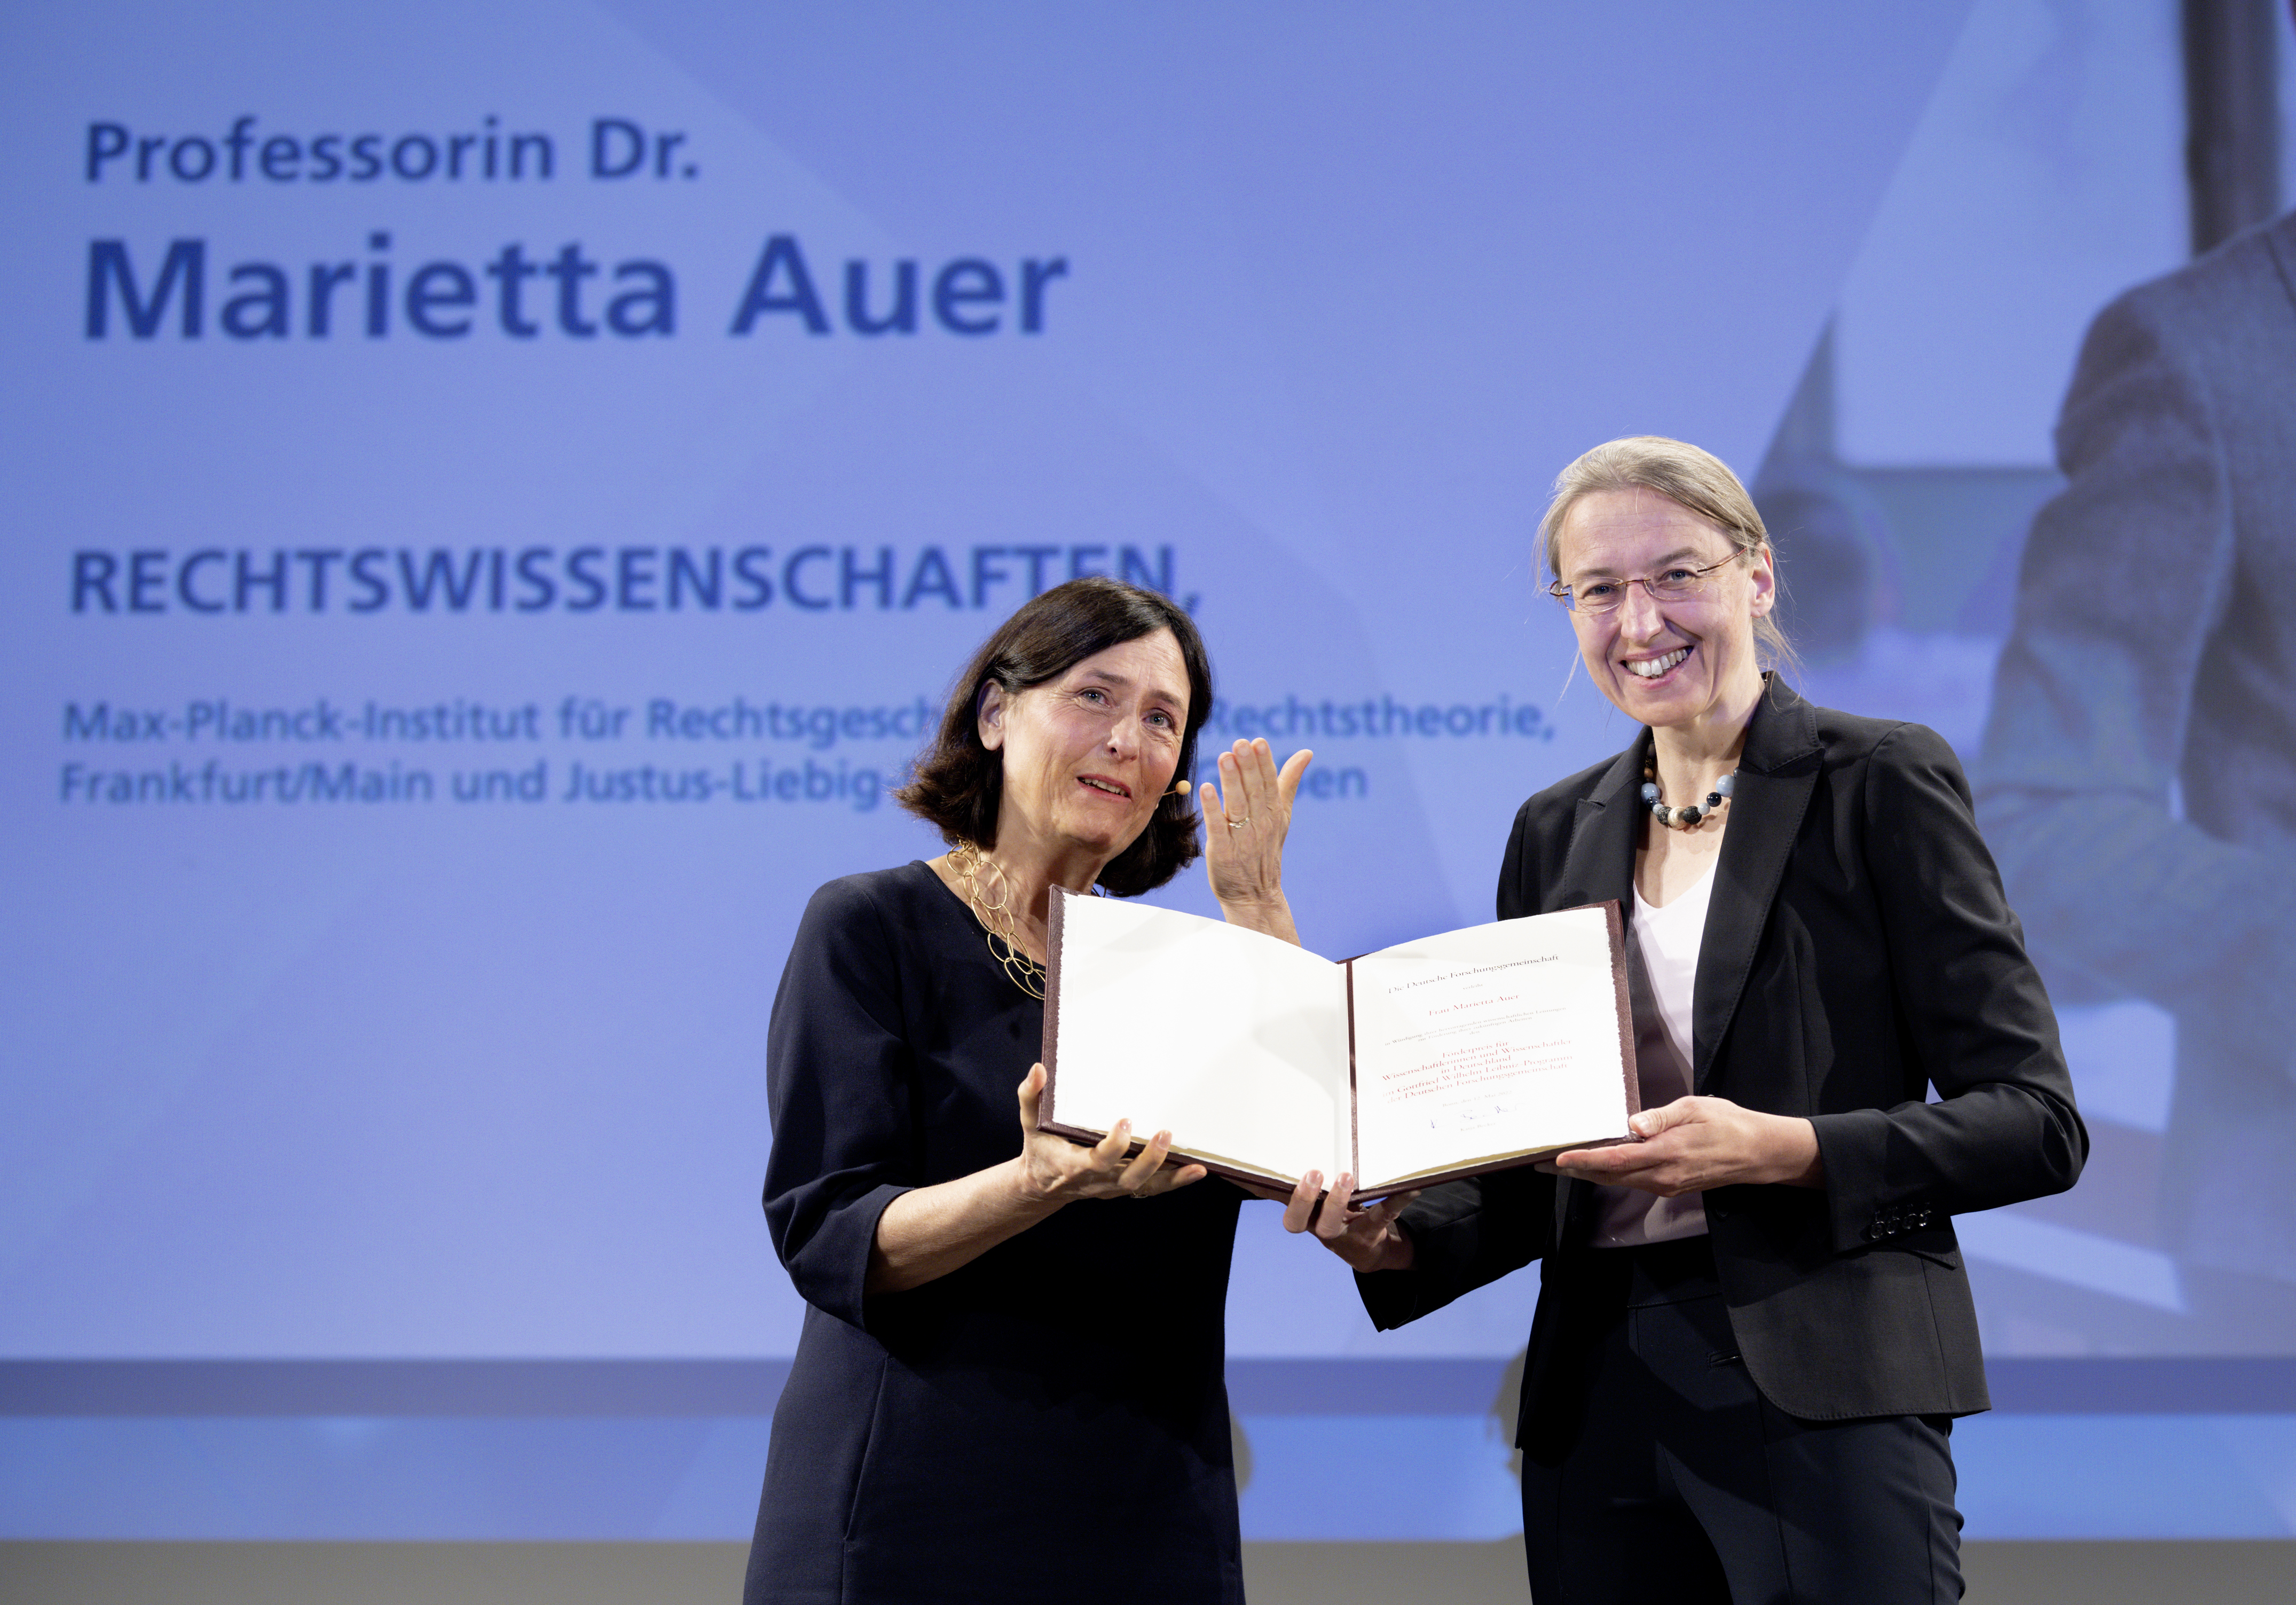 Preisverleihung an Prof. Dr. Marietta Auer